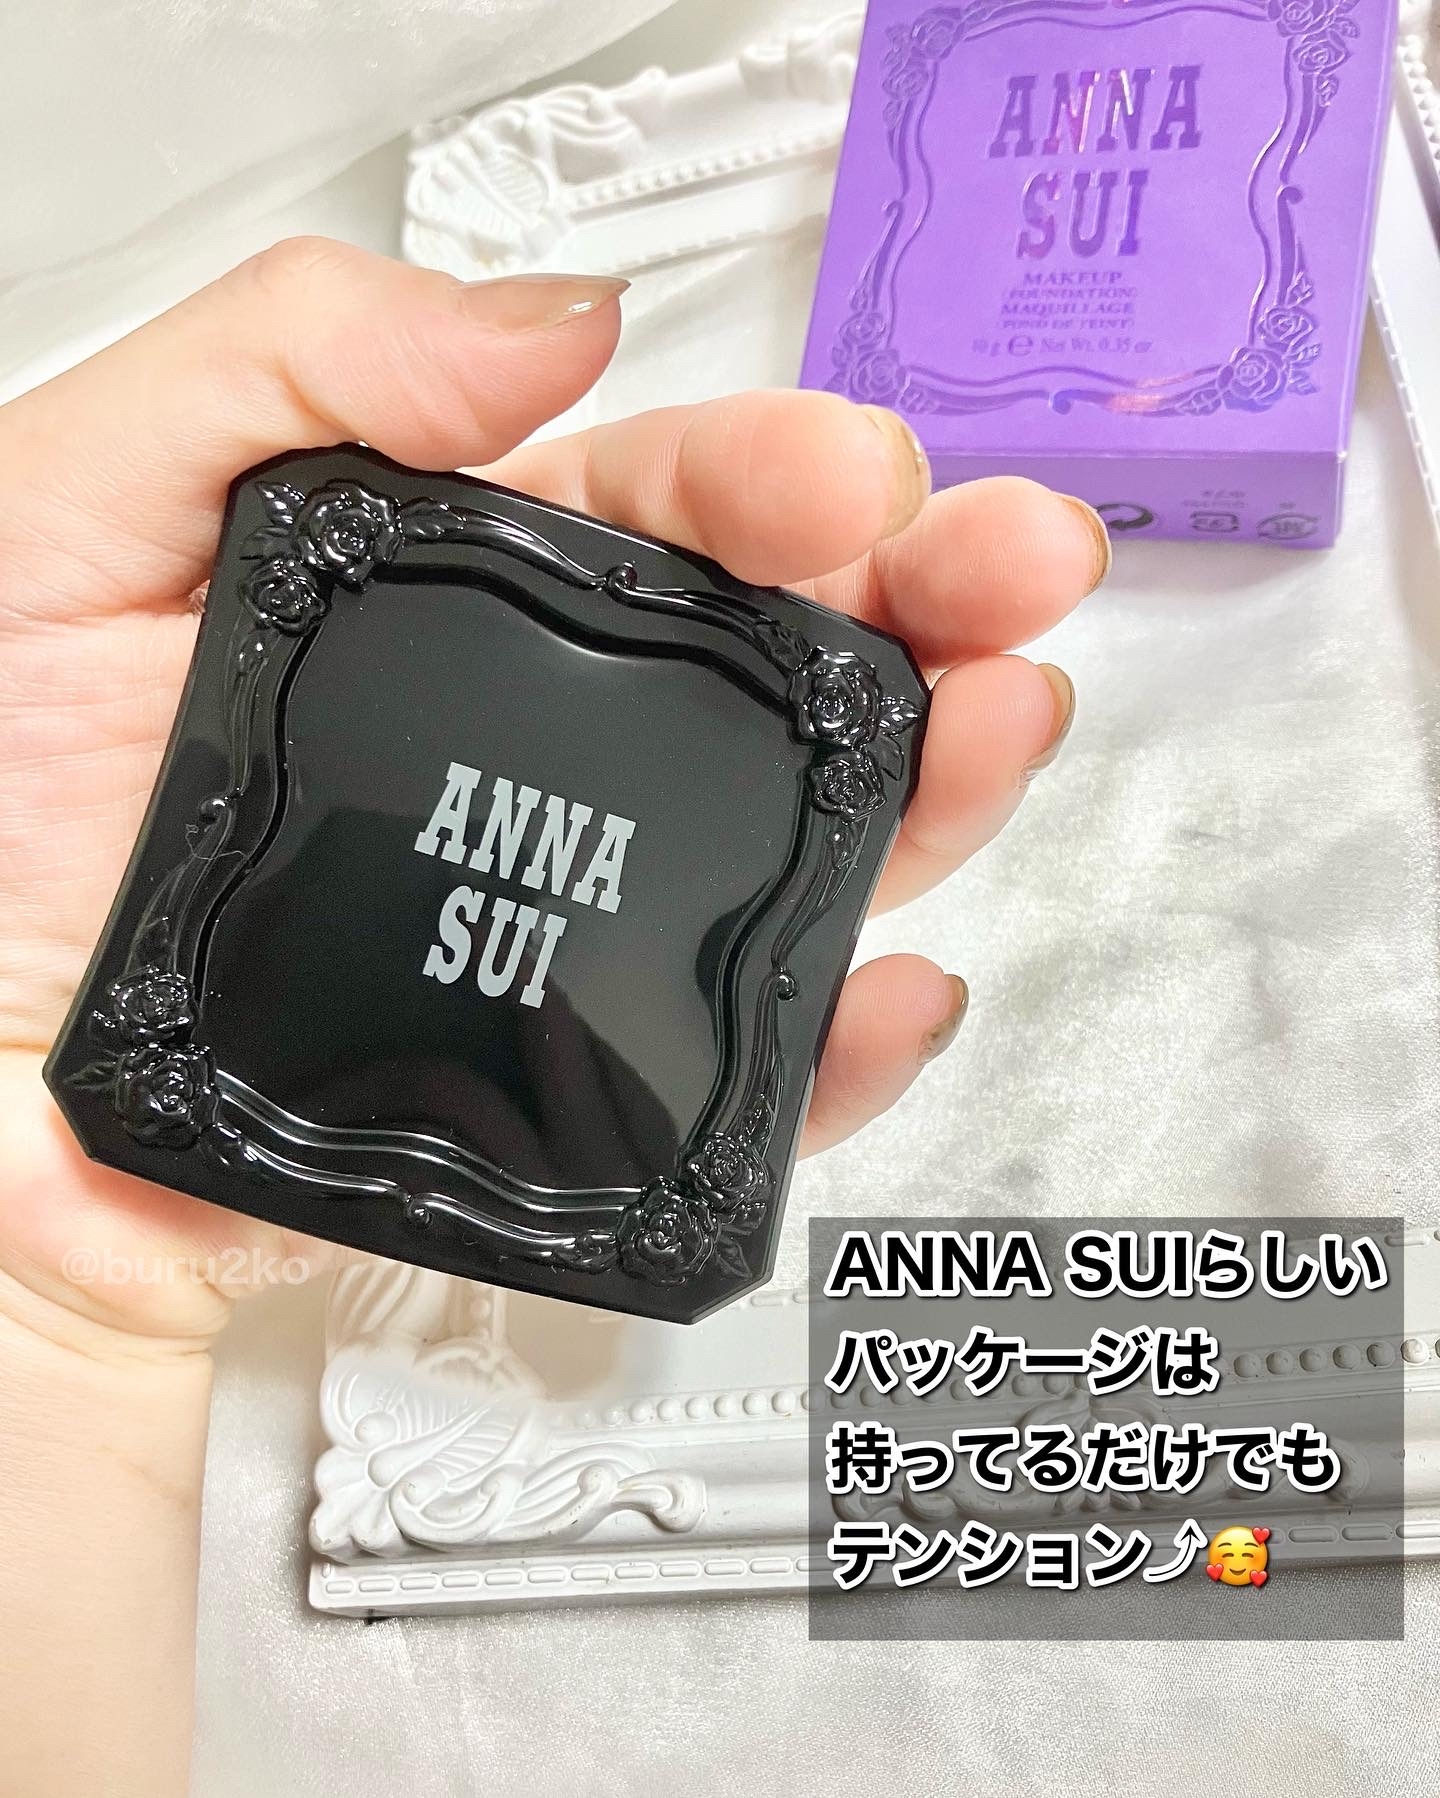 ANNA SUI(アナ スイ) メイクアップの良い点・メリットに関するぶるどっくさんの口コミ画像3